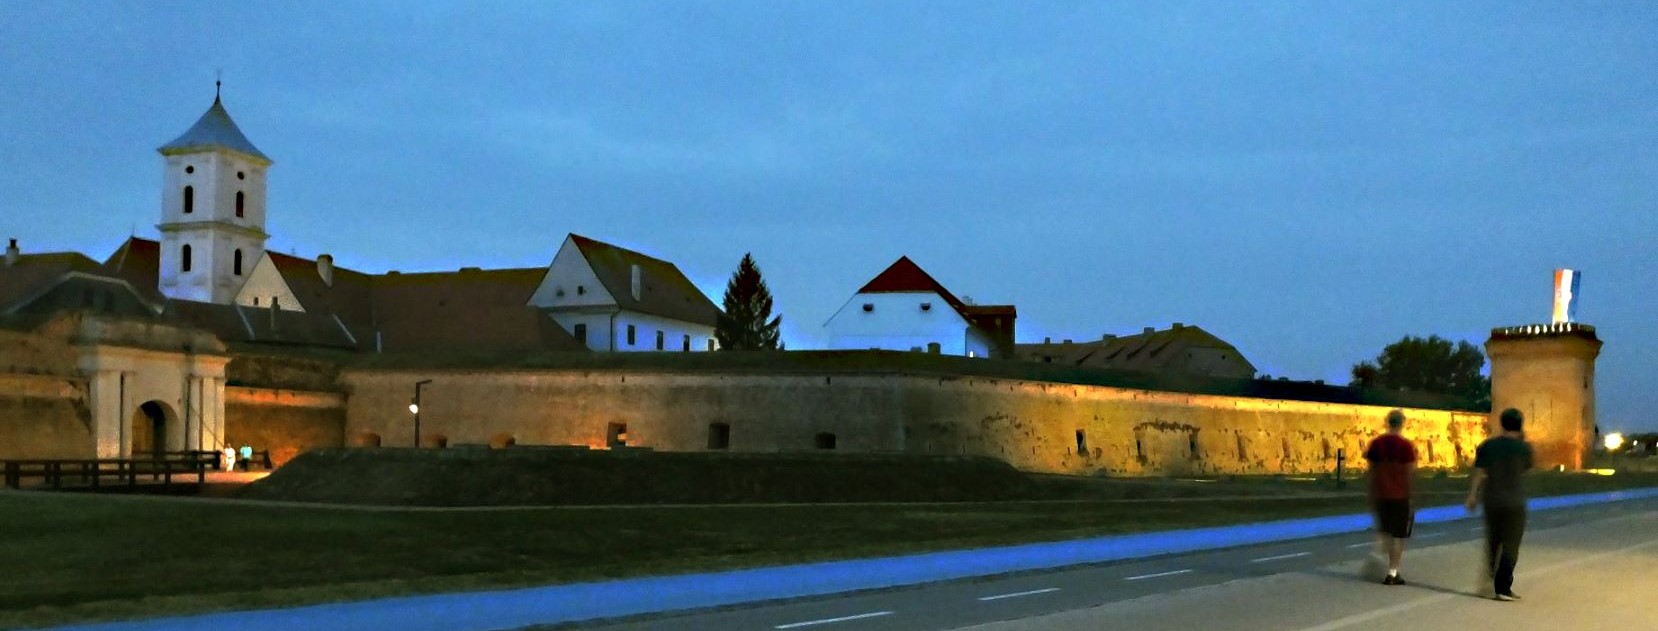 Hinter dieser alten Festungsmauer liegt die ein besonderes Flair ausstrahlende Altstadt (kroatisch: Tvarda) von Osijek mit vielfältiger Architektur, schönen Plätzen und verwinkelten Gassen.